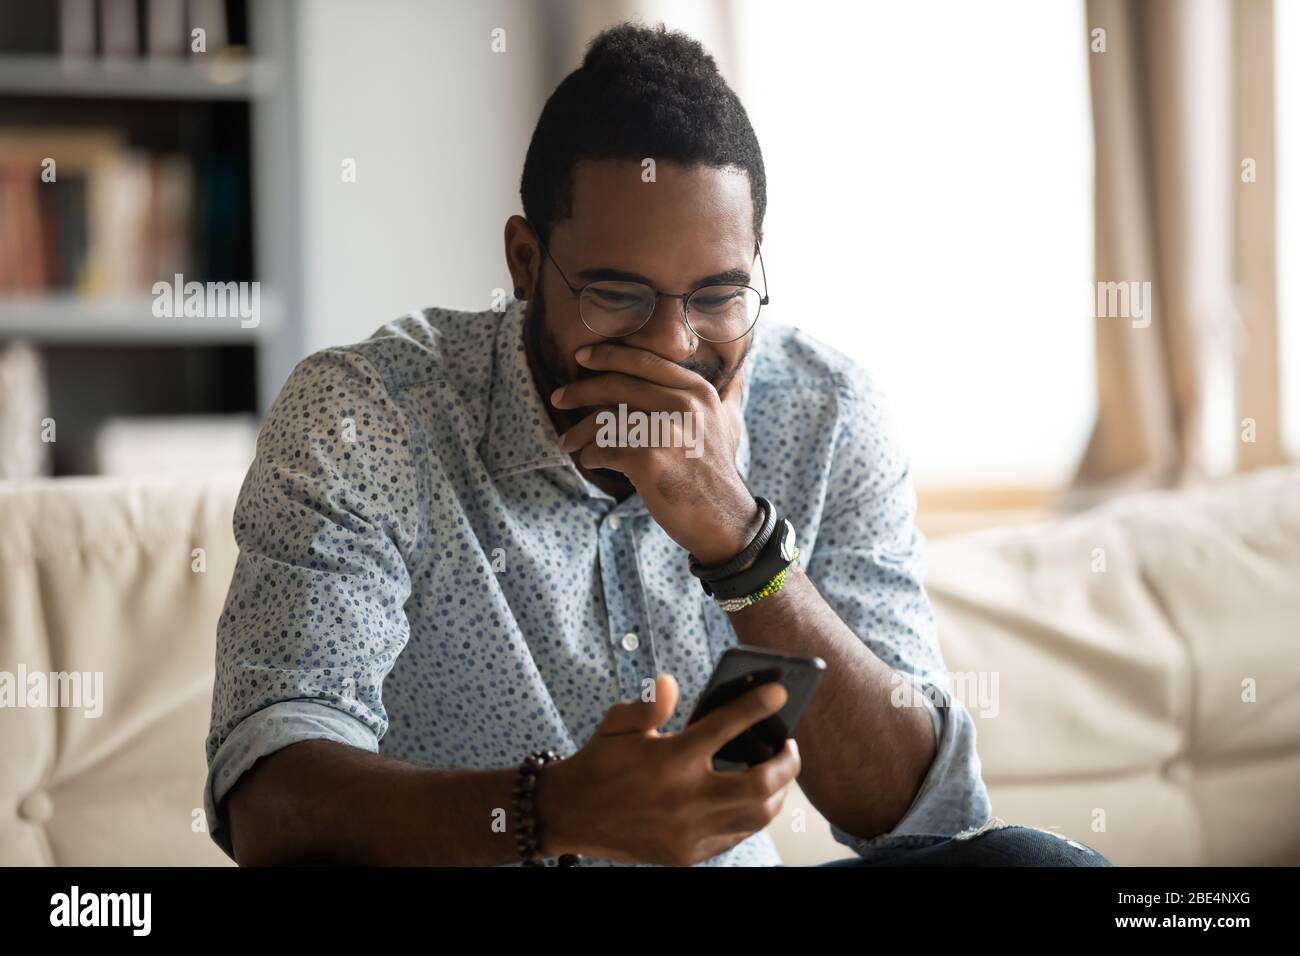 Lustiger junger afrikanischer Ethnicity Kerl, der auf den Handybildschirm schaut. Stockfoto